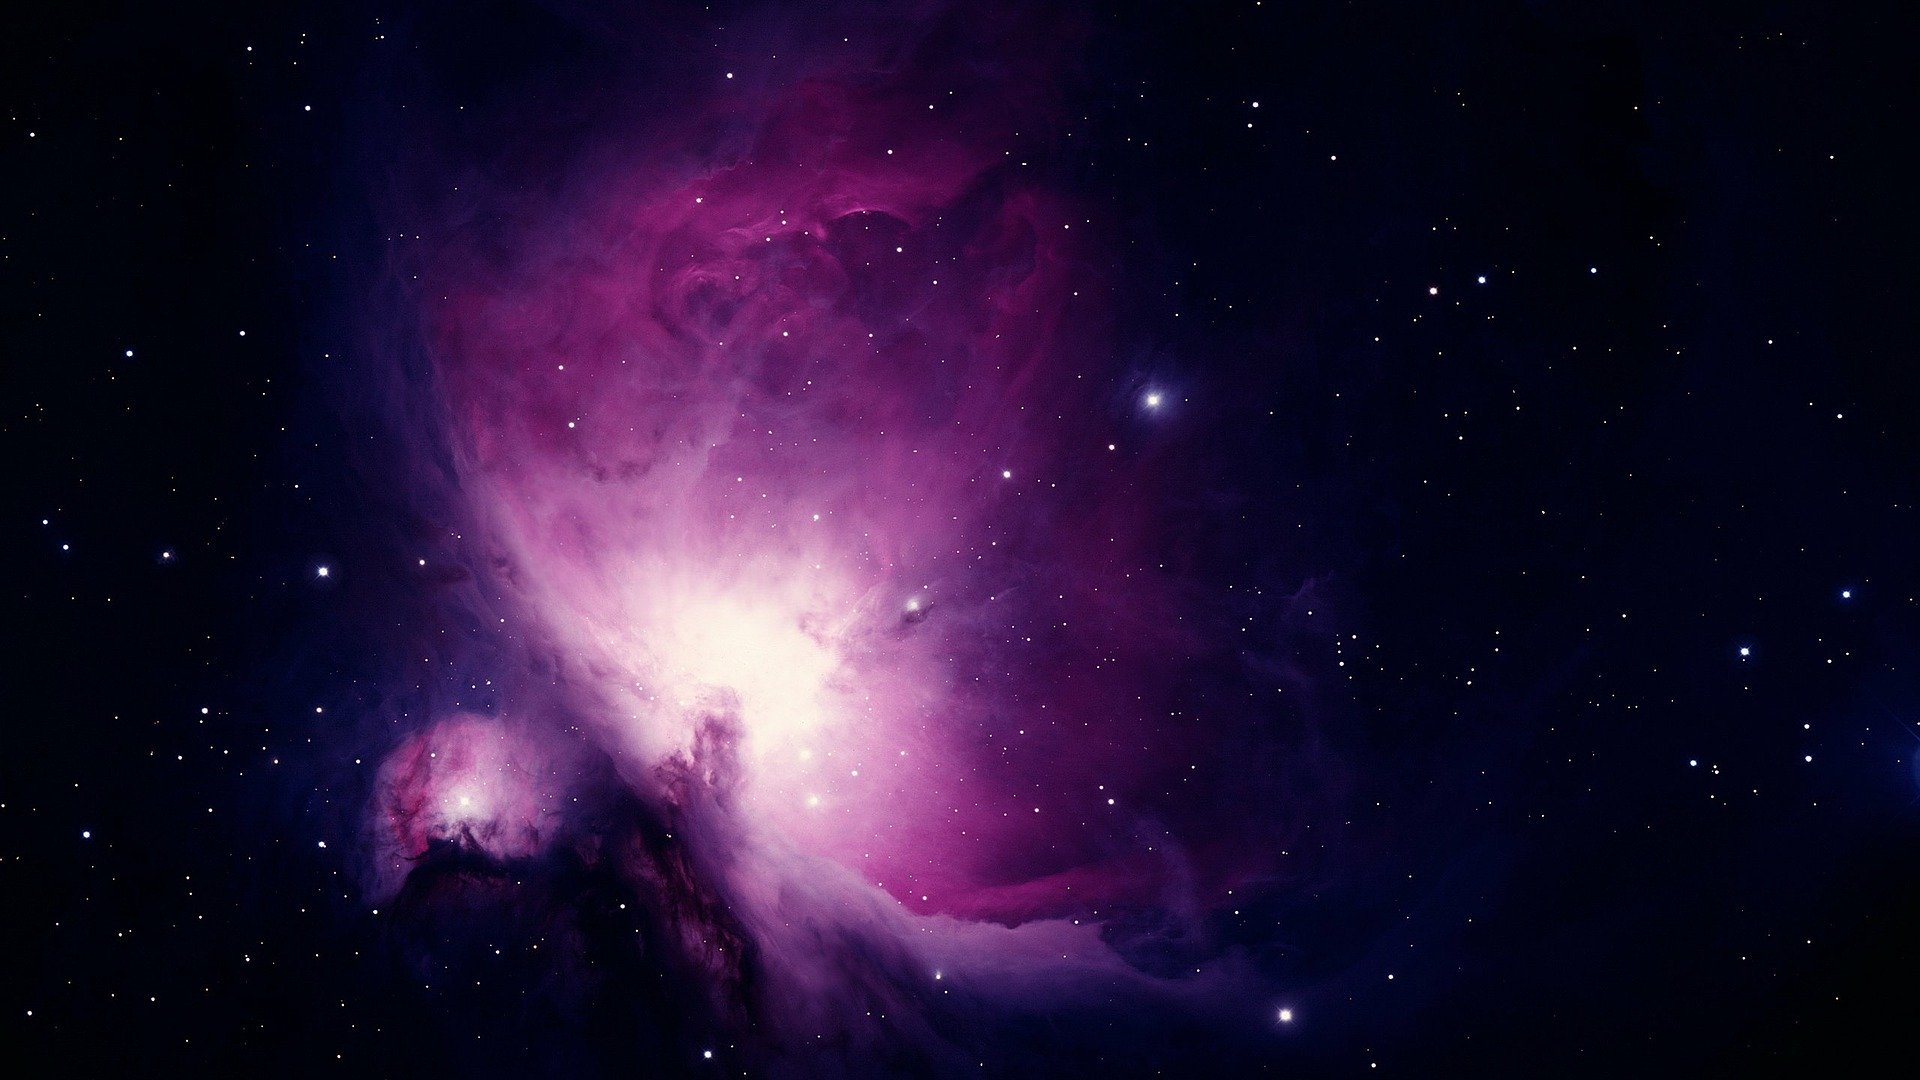 Imagem da Nebulosa de Orion, de cor roxa e rosada